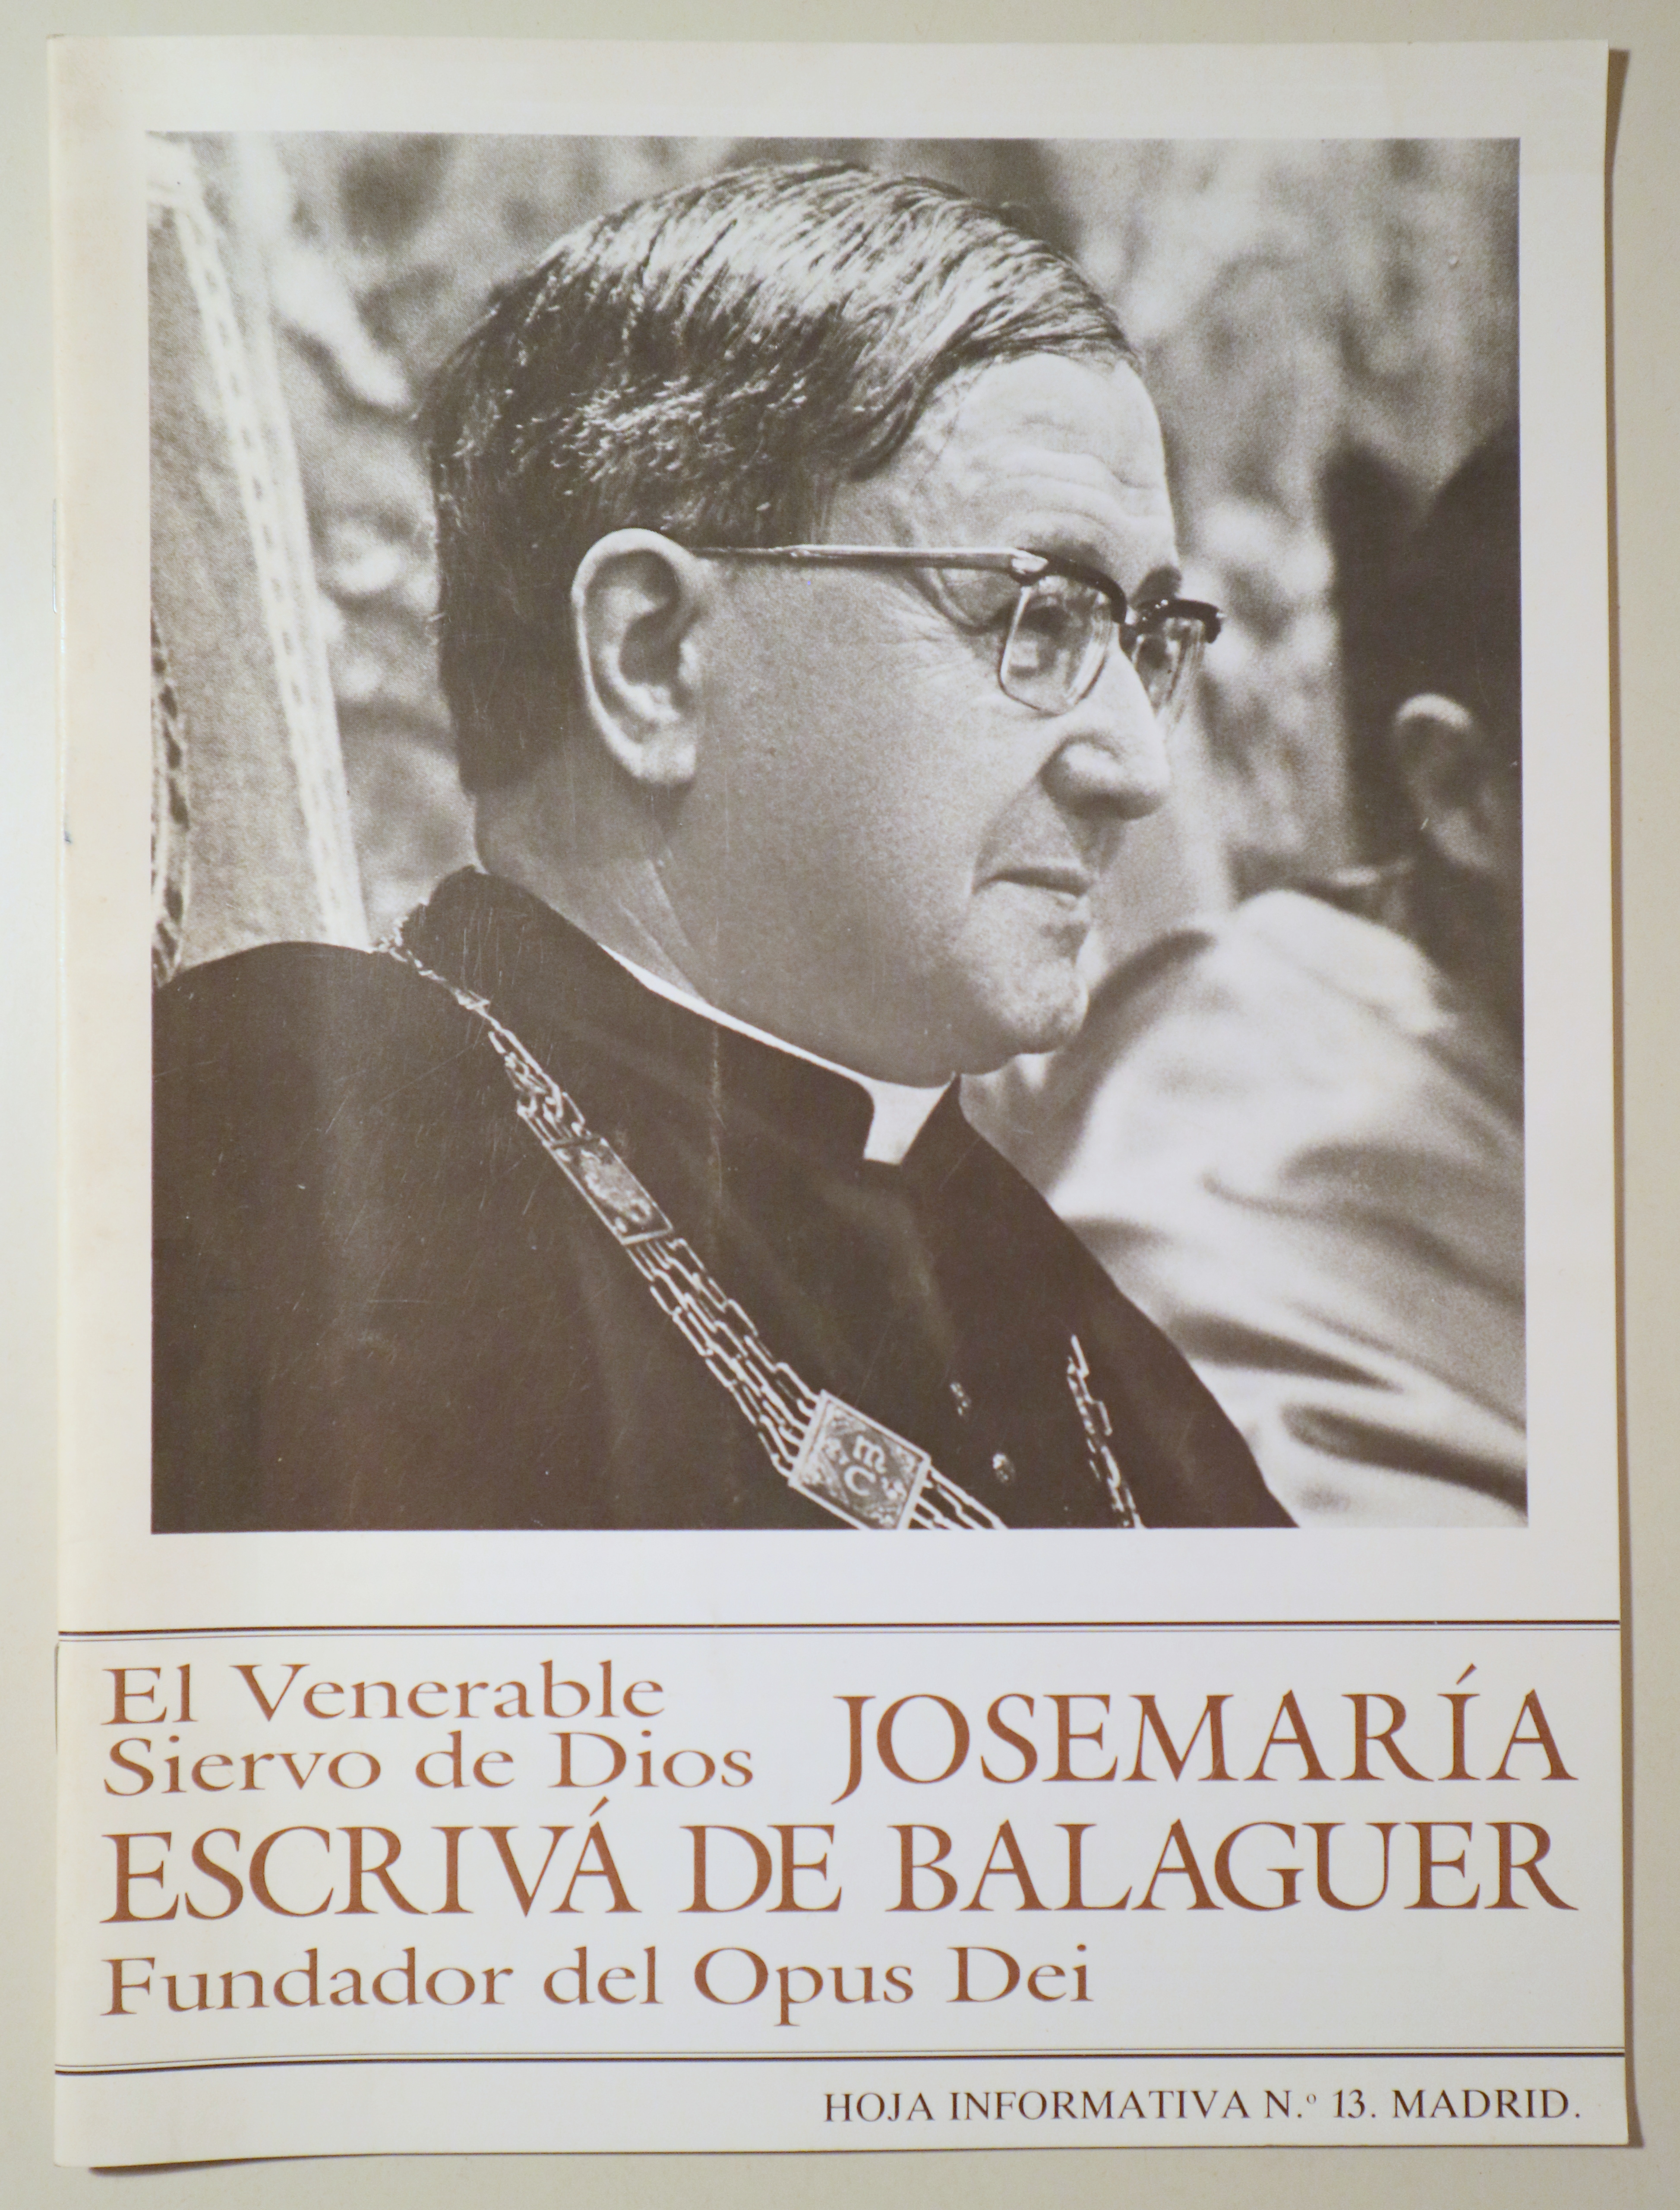 EL VENERABLE SIERVO DE DIOS. José Mª Escrivá de Balaguer, Fundador del Opus Dei - Madrid 1990